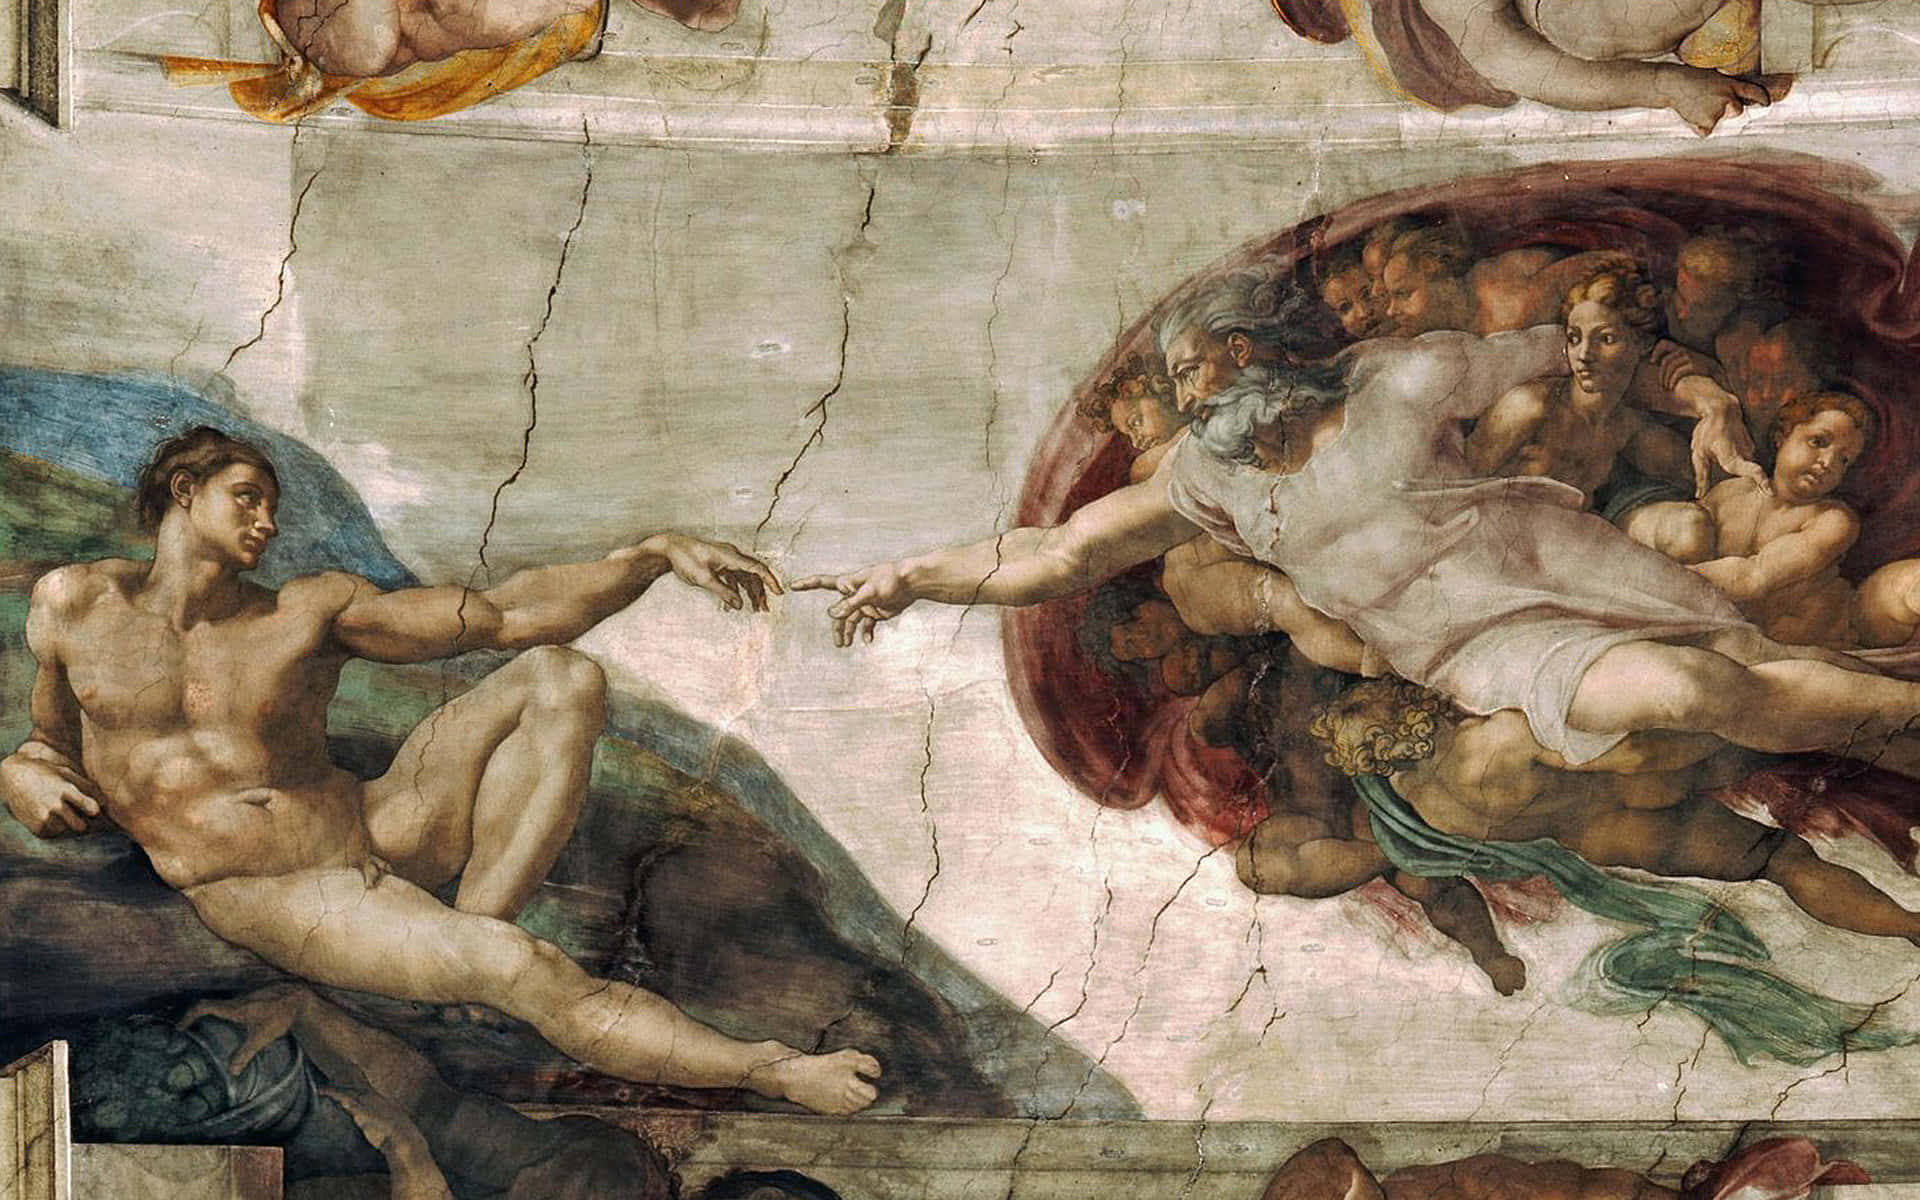 Michelangelo Wallpaper